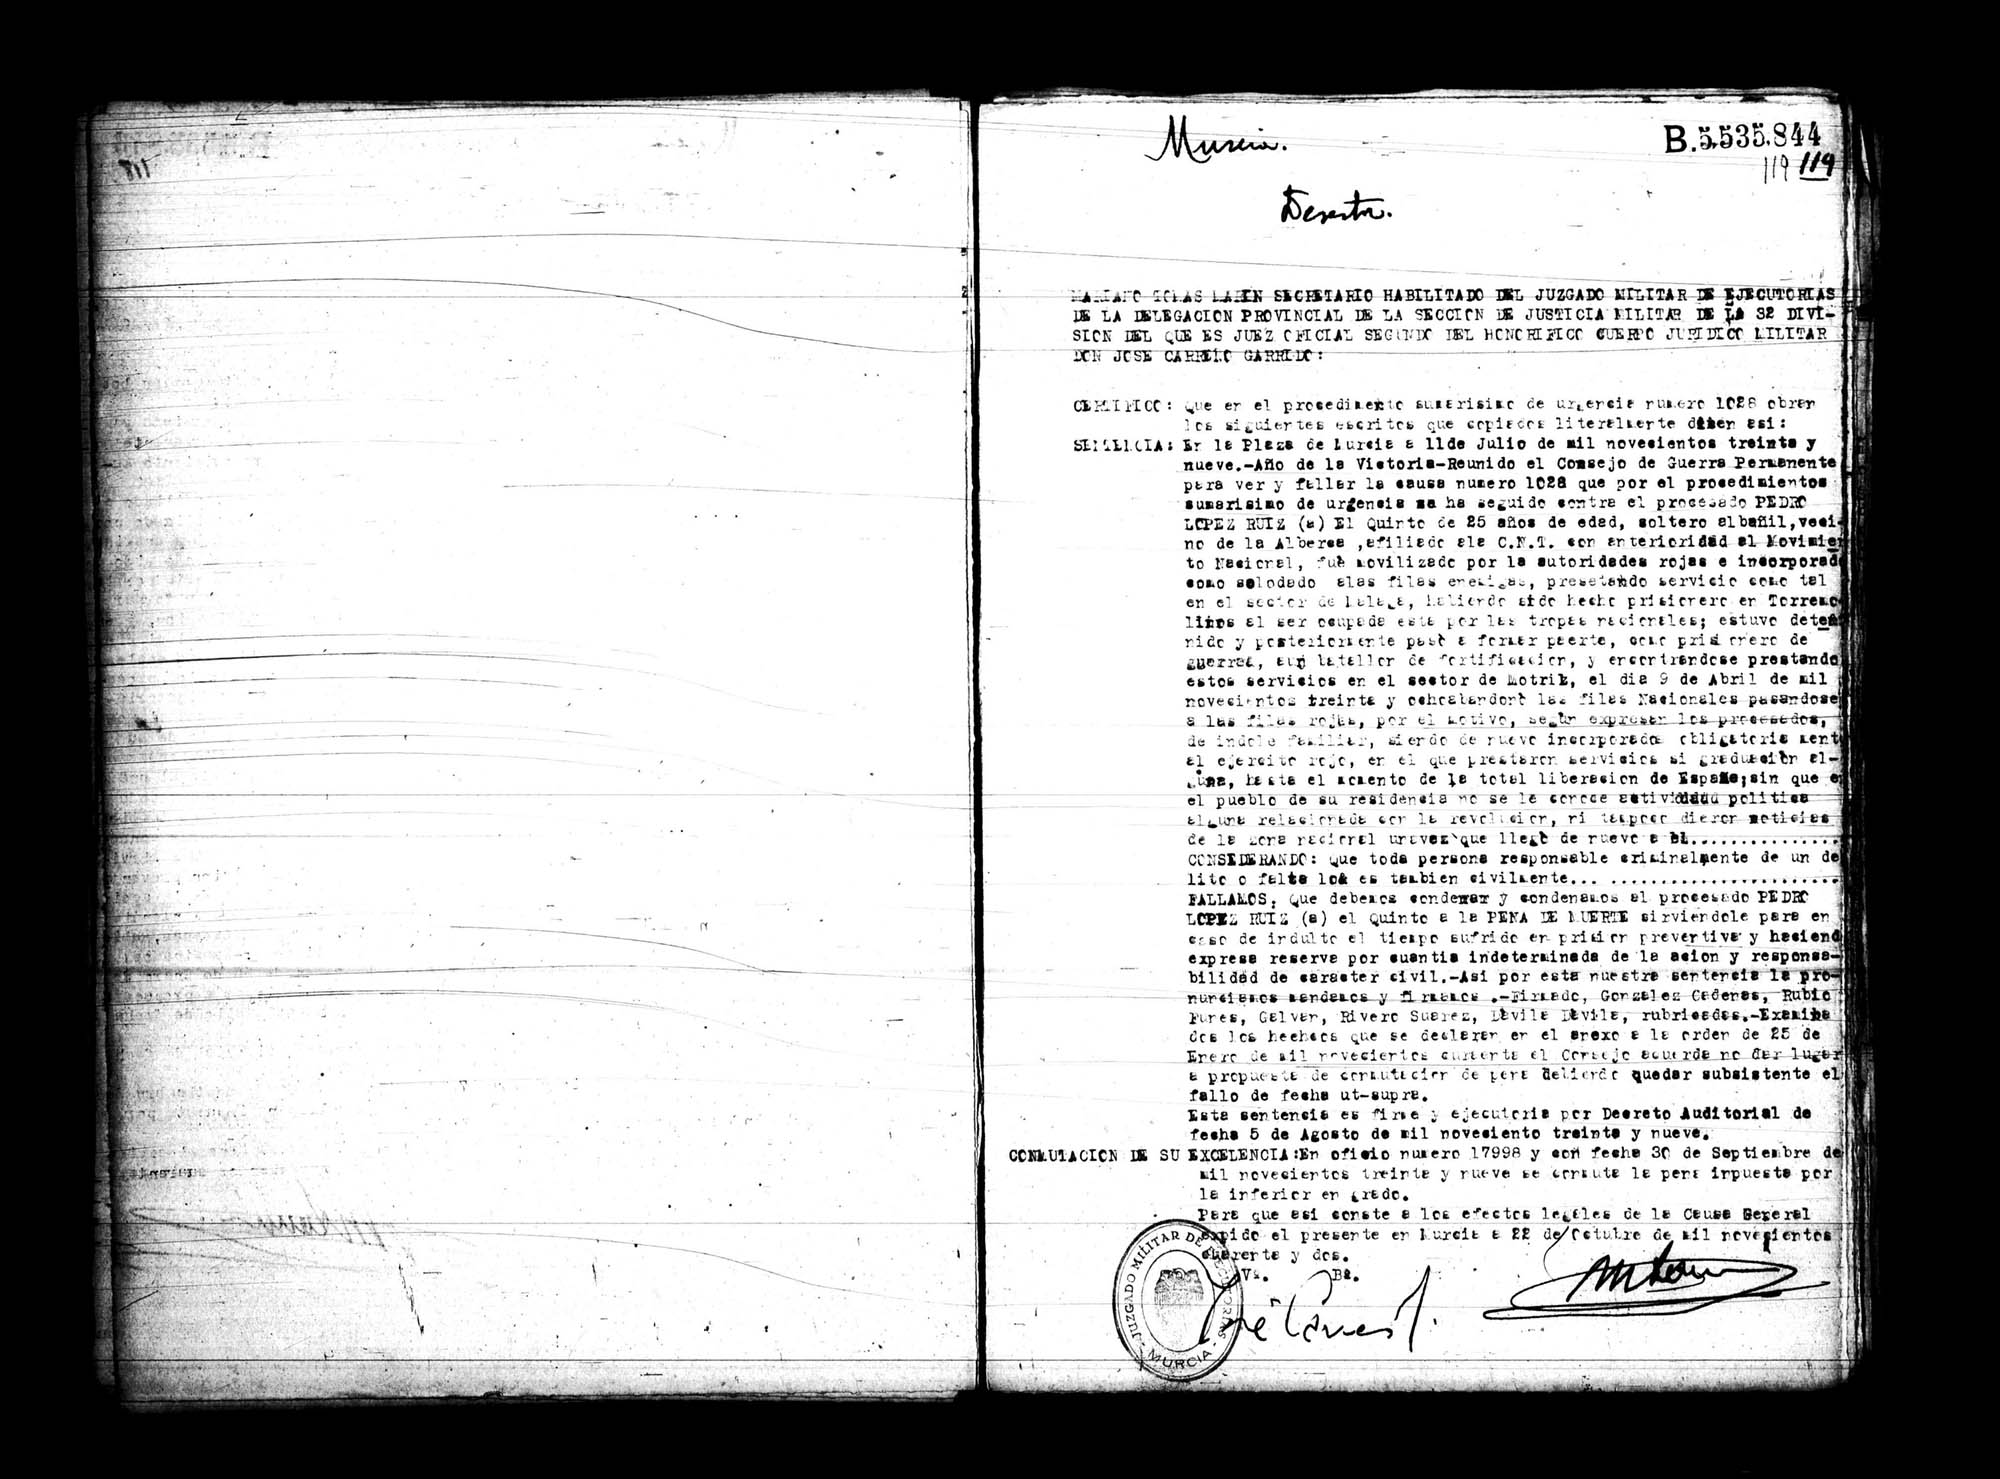 Certificado de la sentencia pronunciada contra Pedro López Ruiz, causa 1020, el 11 de julio de 1939 en Murcia.